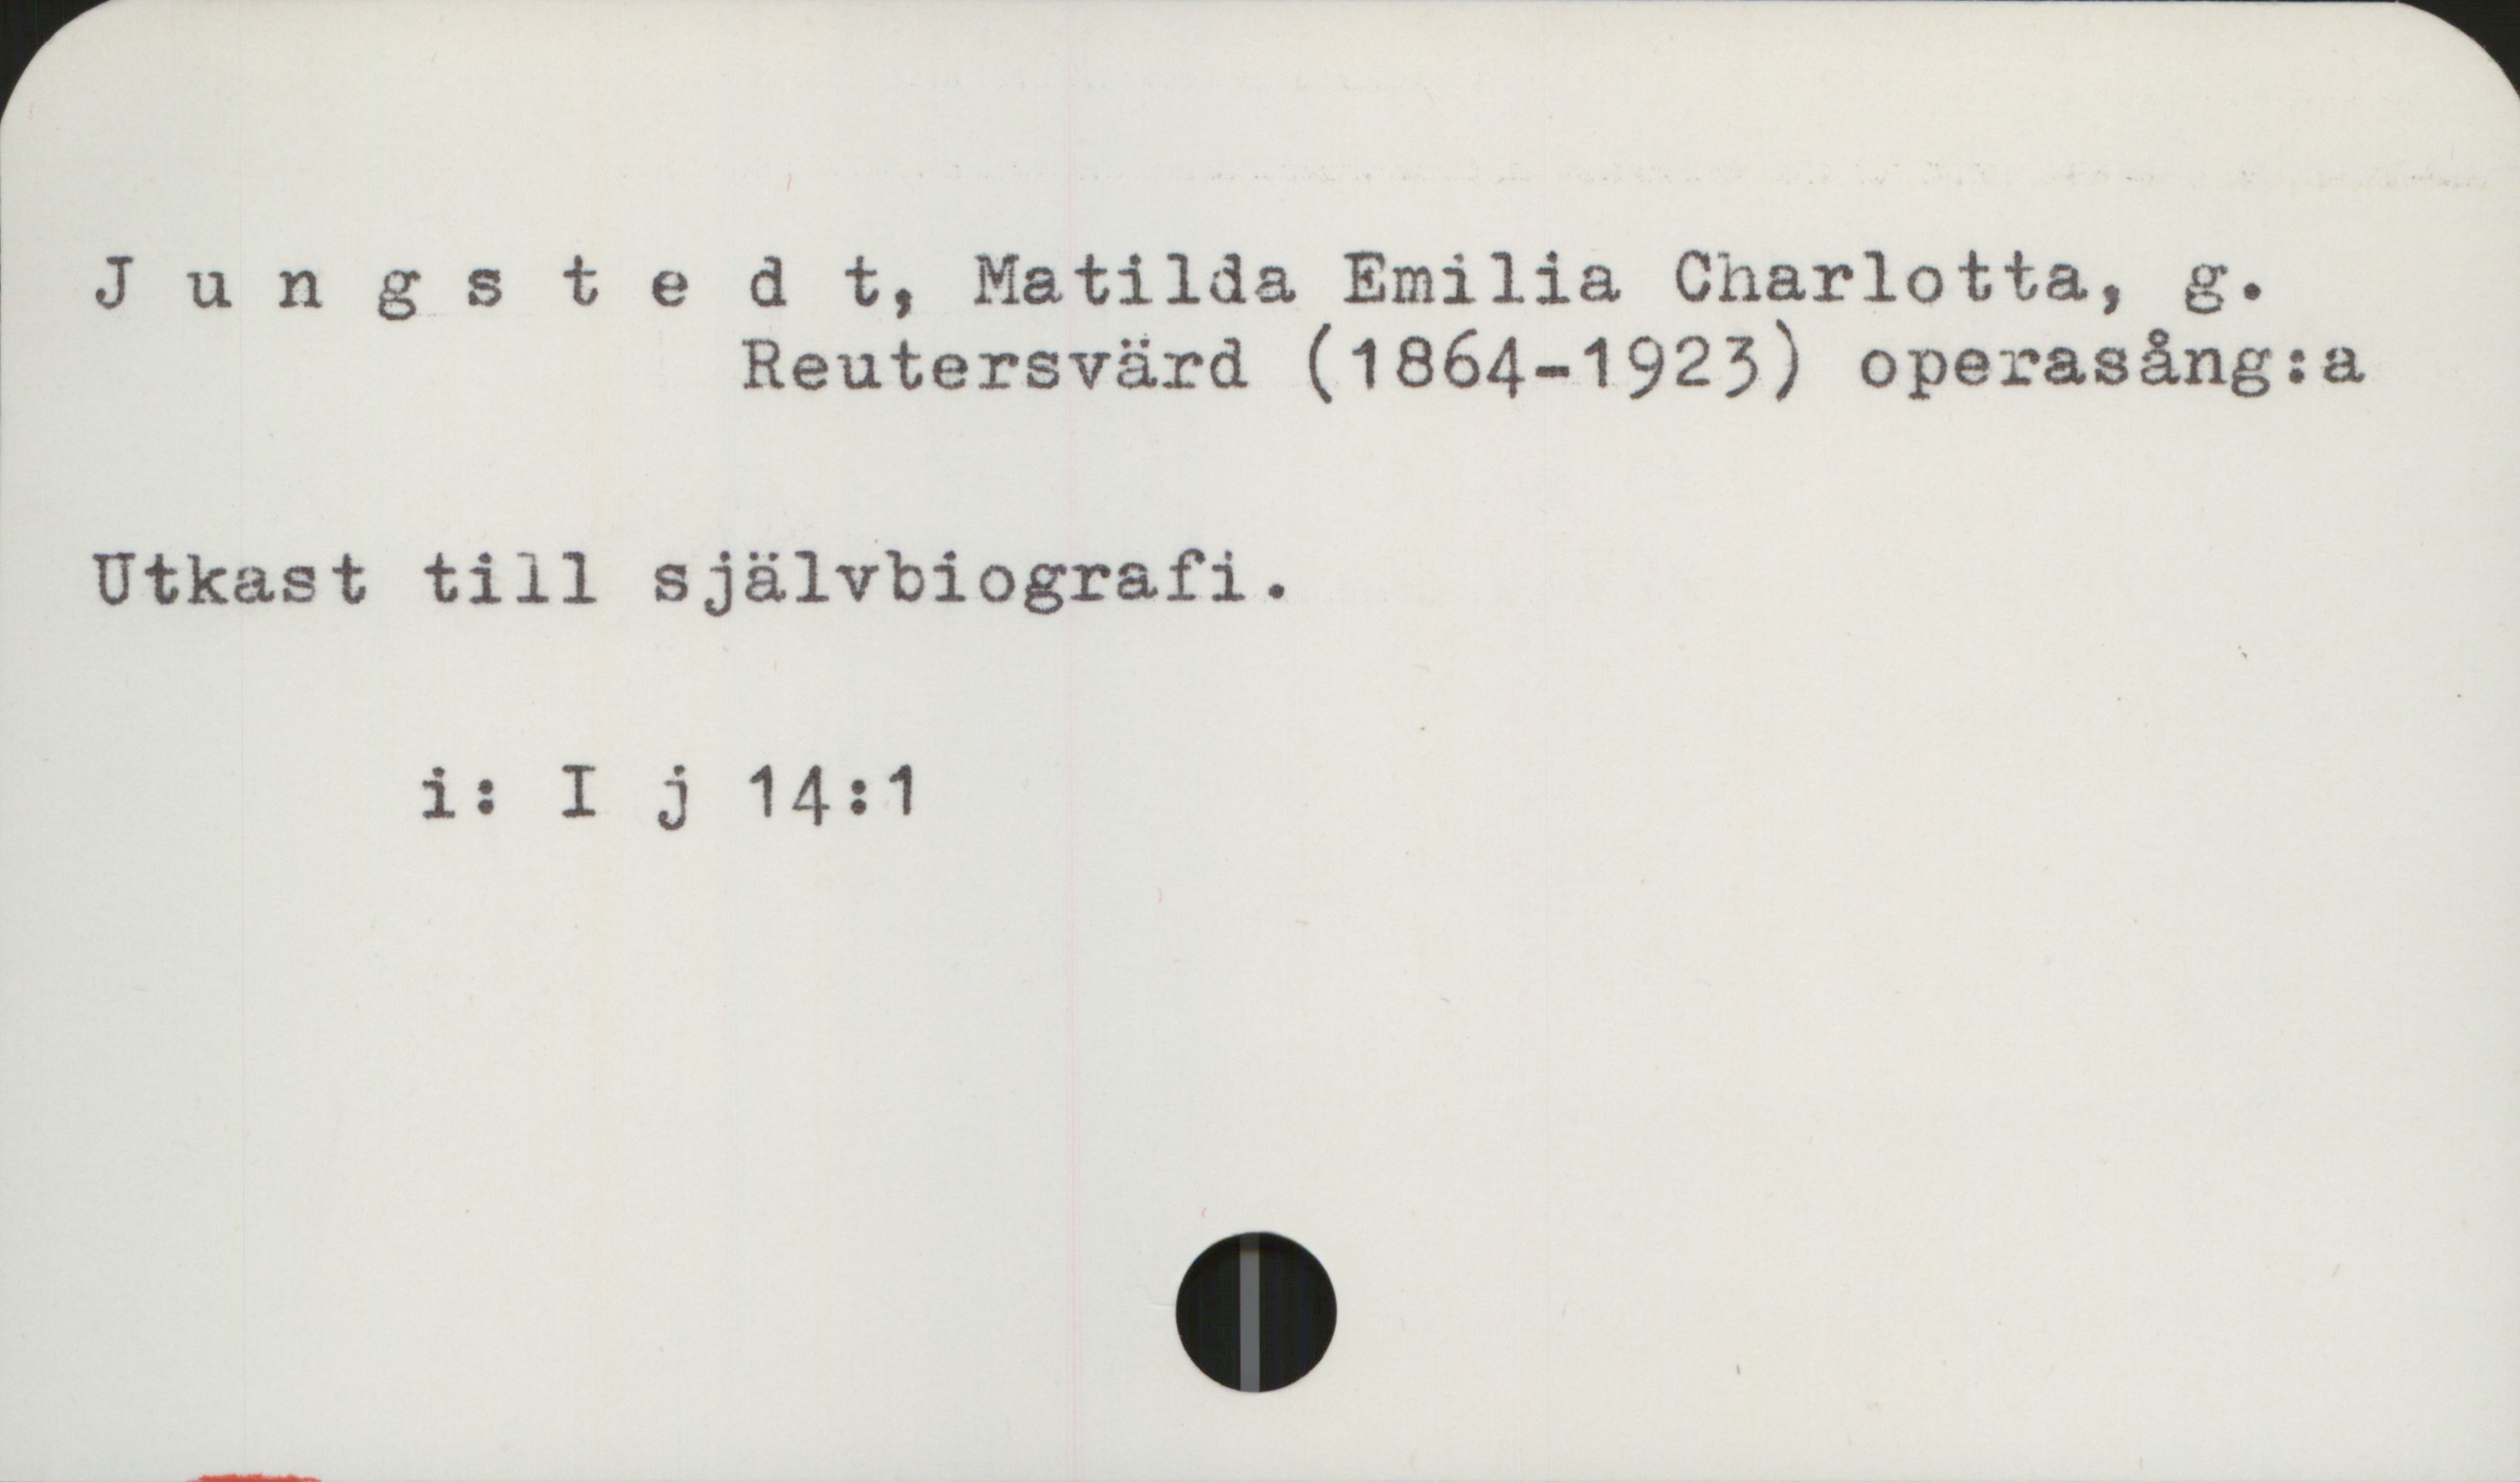 Jungstedt, Matilda (1864-1923) Jungstedt, Matilda Emilia Charlotta, 
               g. Reutersvärd (1864-1923) operasång:a

Utkast till självbiografi

            i: I j 14:1